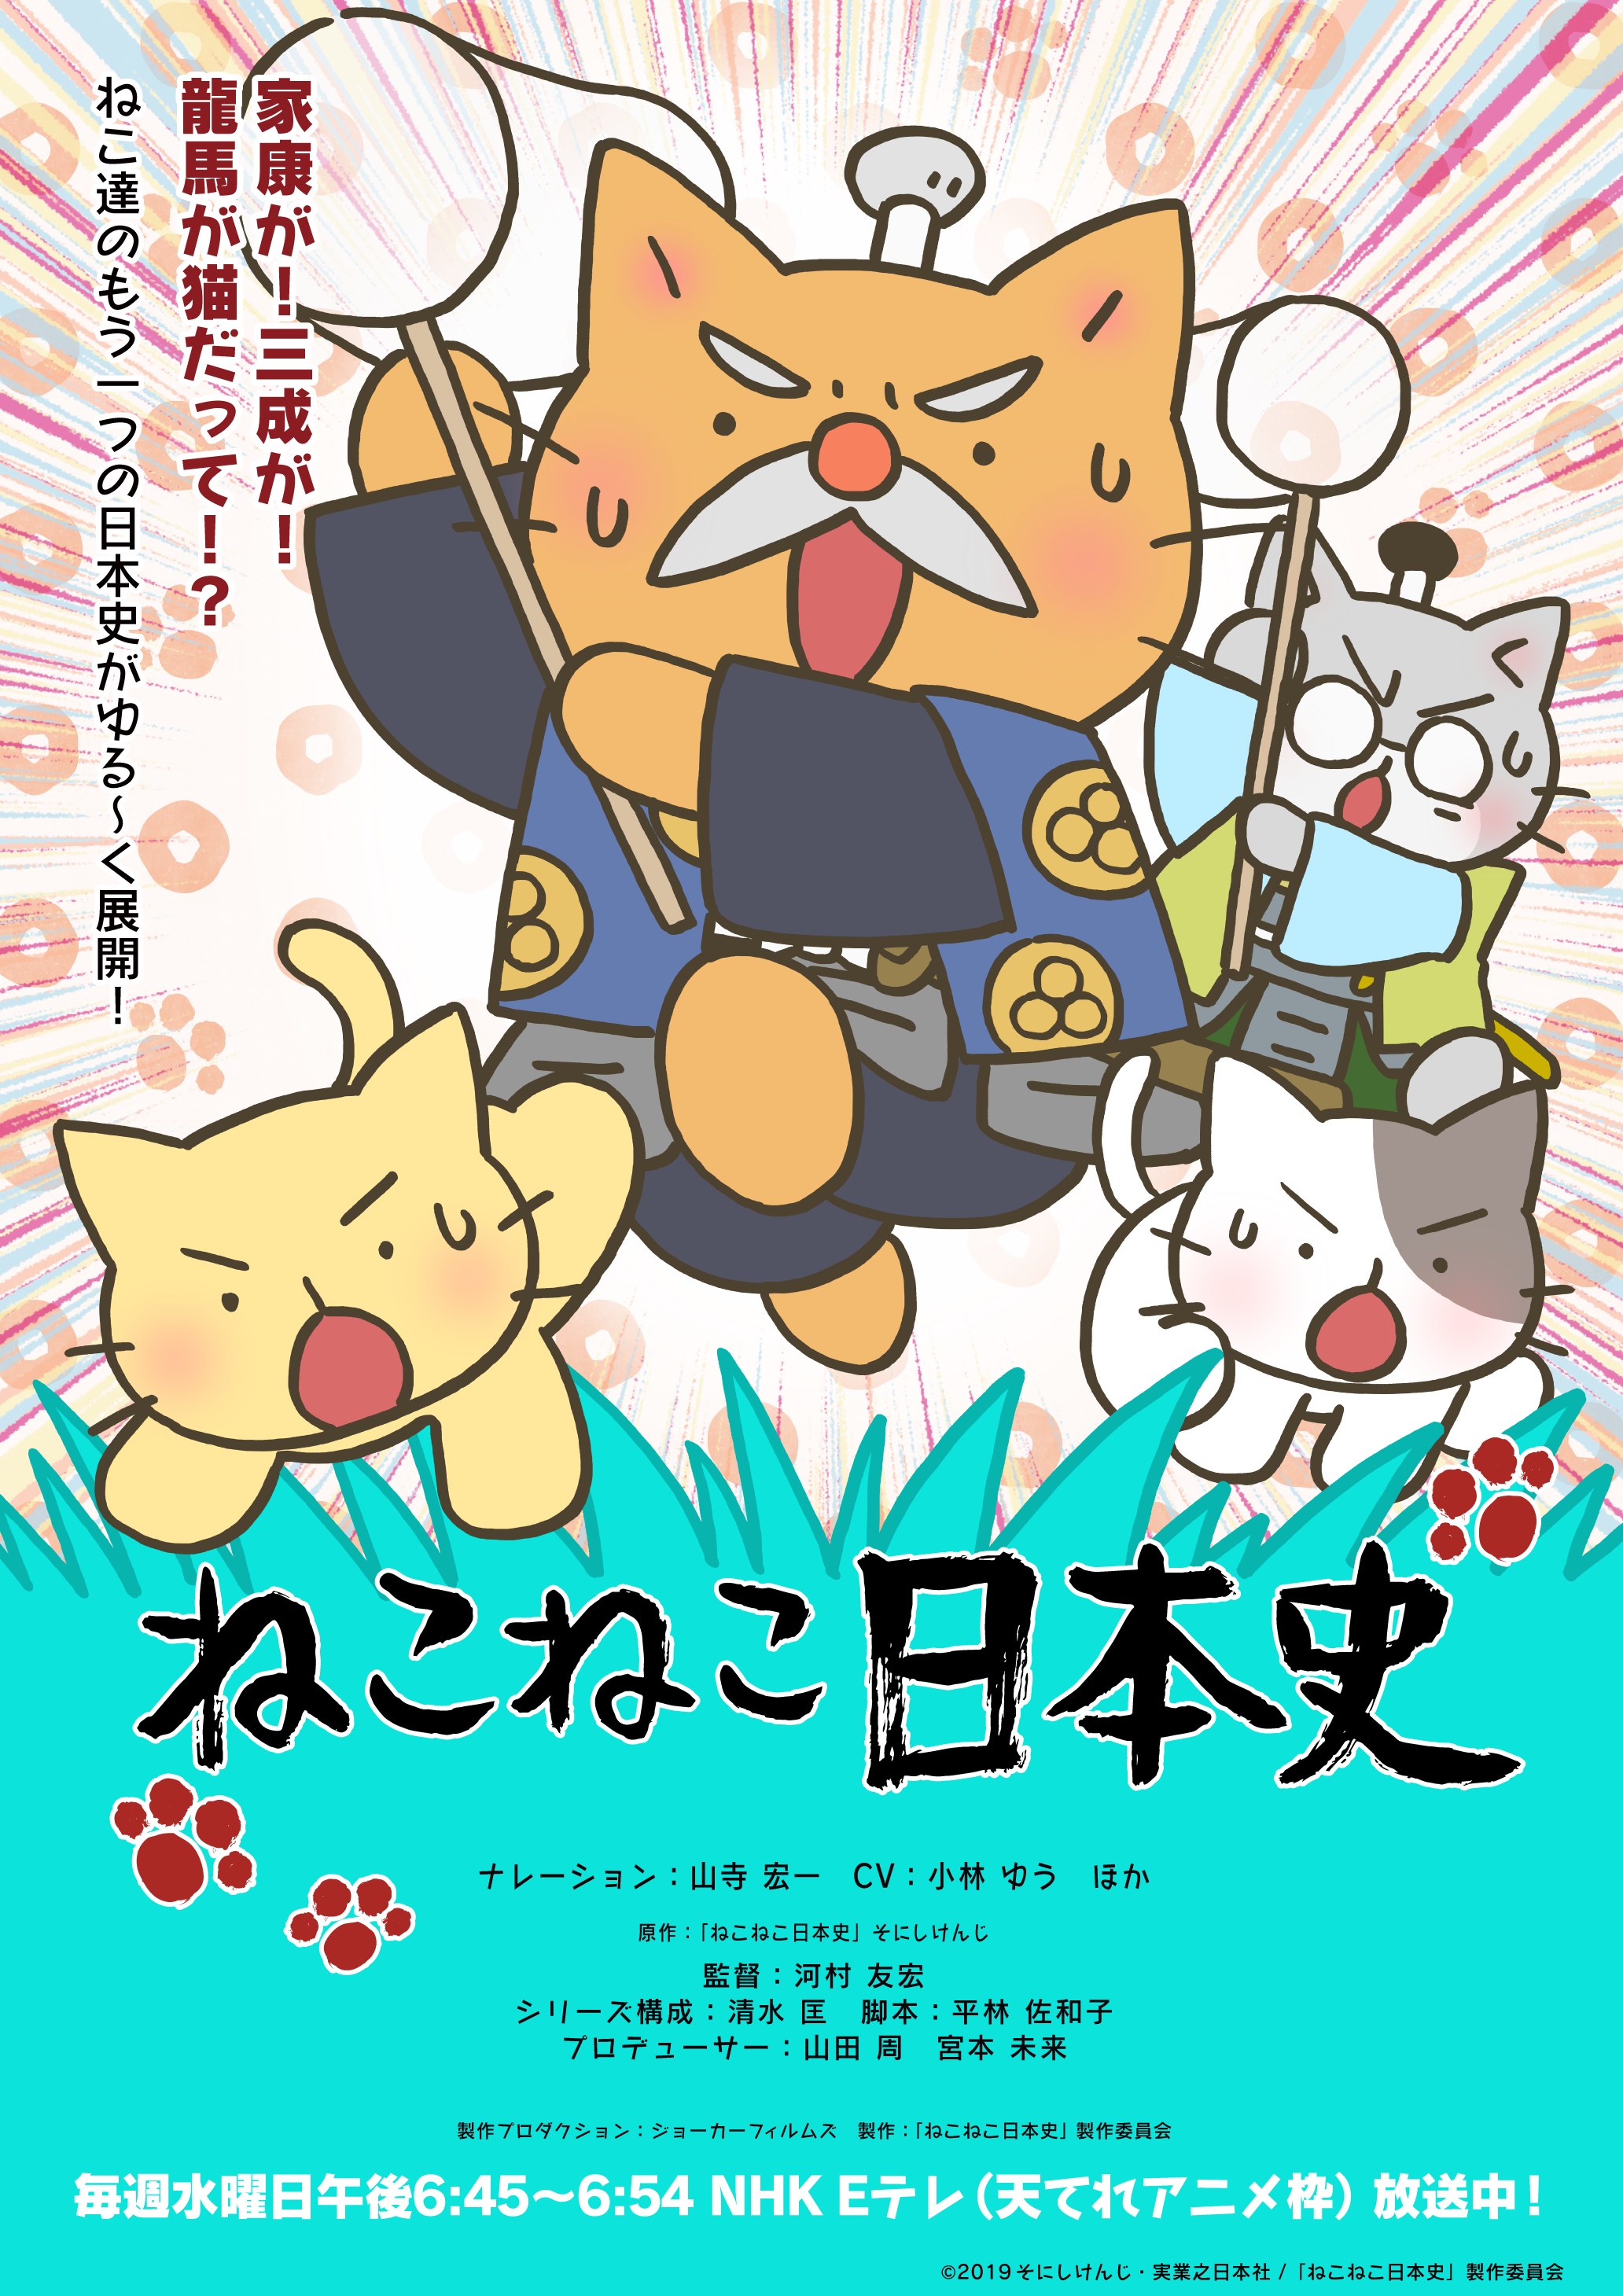 アニメ ねこねこ日本史 第4期後半エンディング テーマのアーティストがむぎ 猫 に決定 オープニングテーマは前回に引き続きelfin が担当 株式会社アニプレックスのプレスリリース